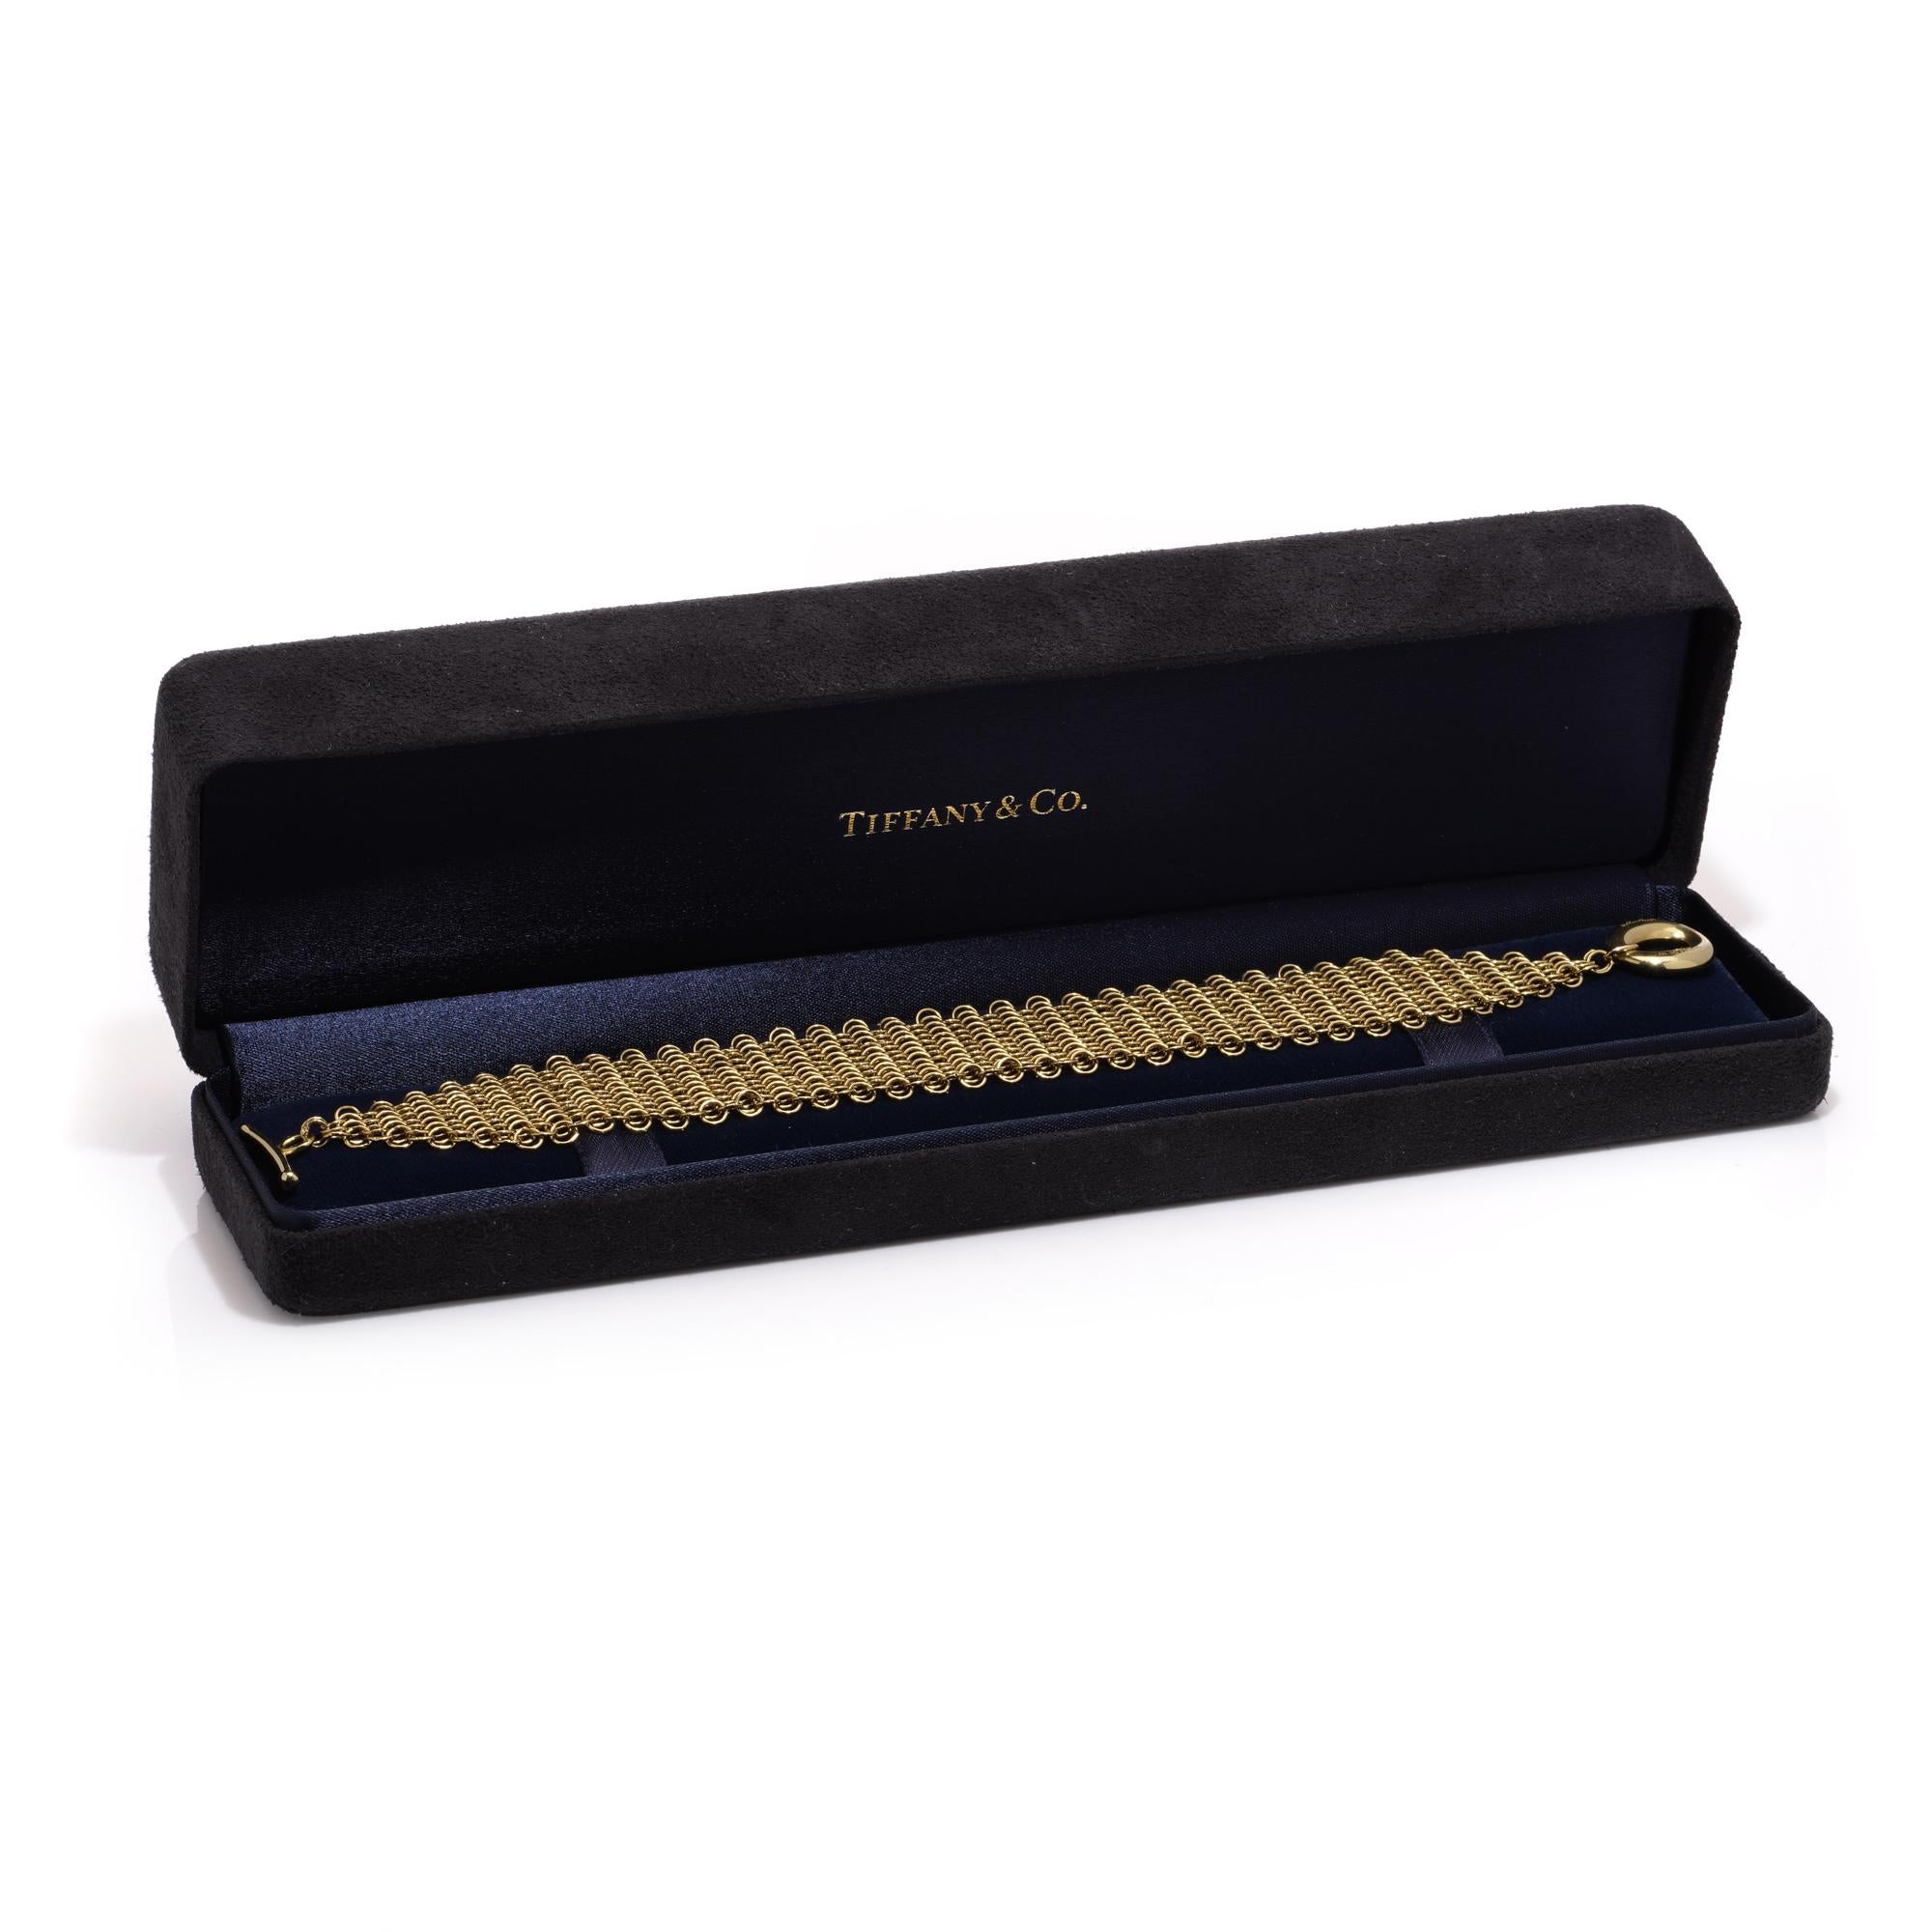 Bracelet à mailles multiples en or jaune 18kt. de Tiffany & Co. conçu par Elsa Peretti.
Fabriqué dans les années 1990.
Le fermoir du bracelet porte les marques 